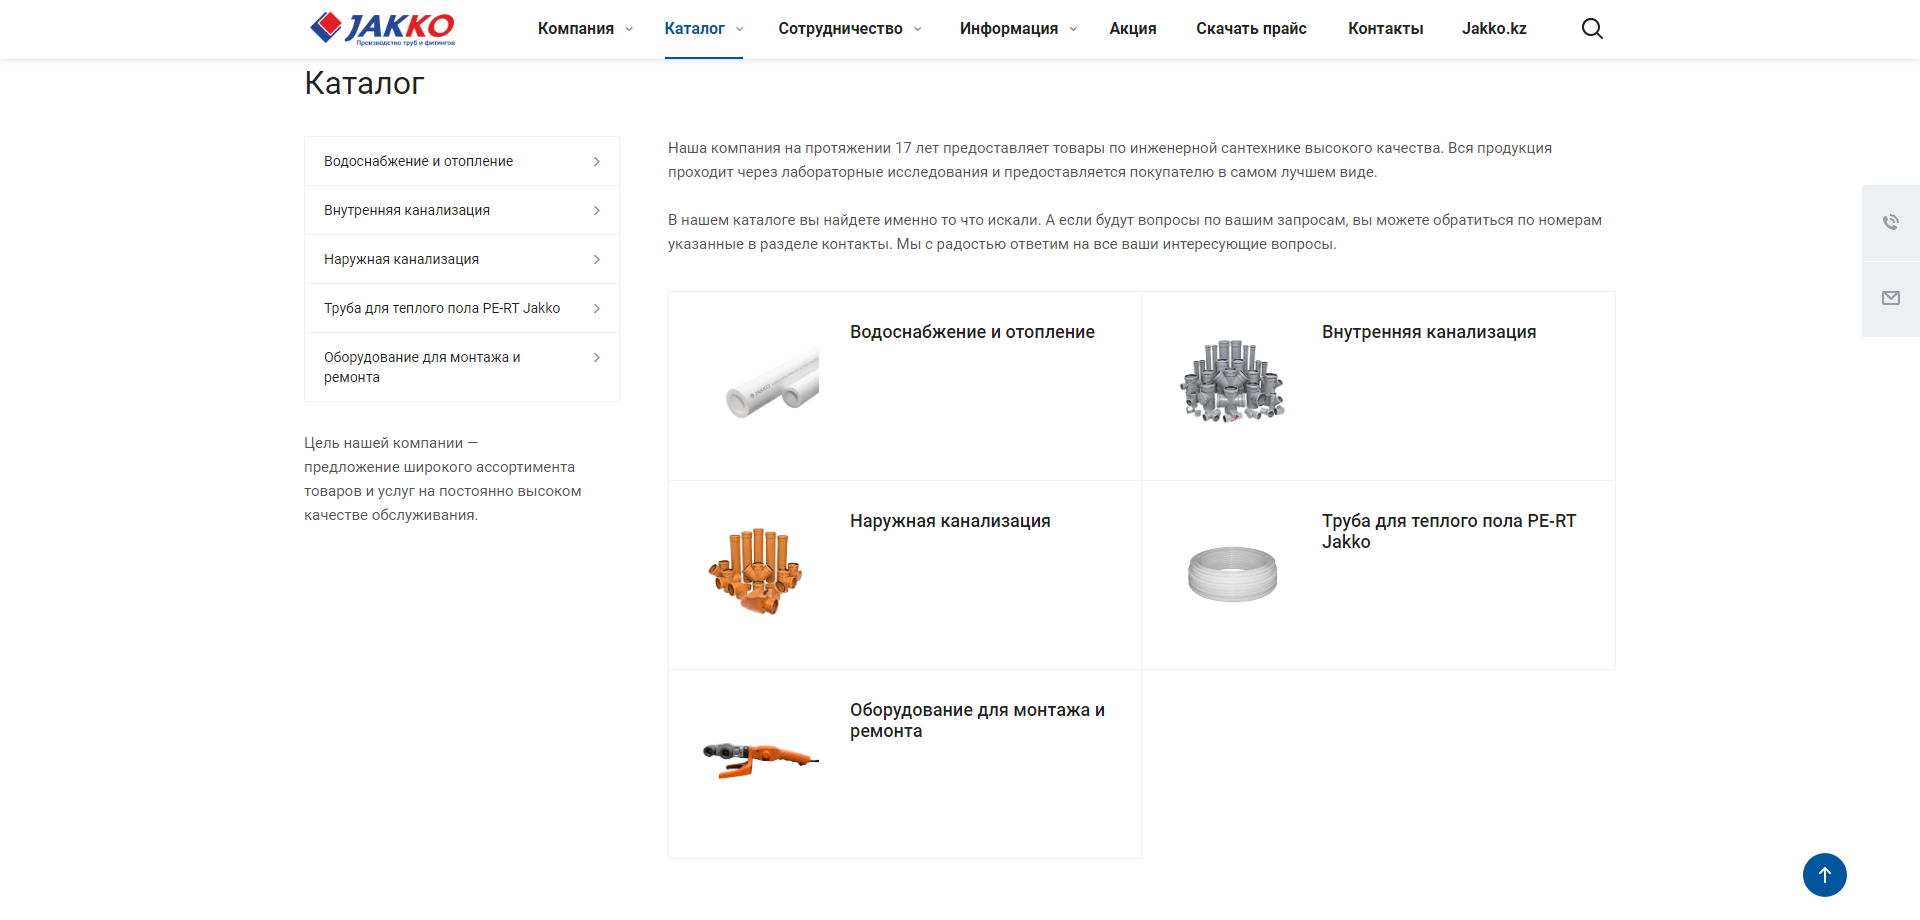 интернет-магазин производителя пластиковых труб и фитингов  jakko.ru